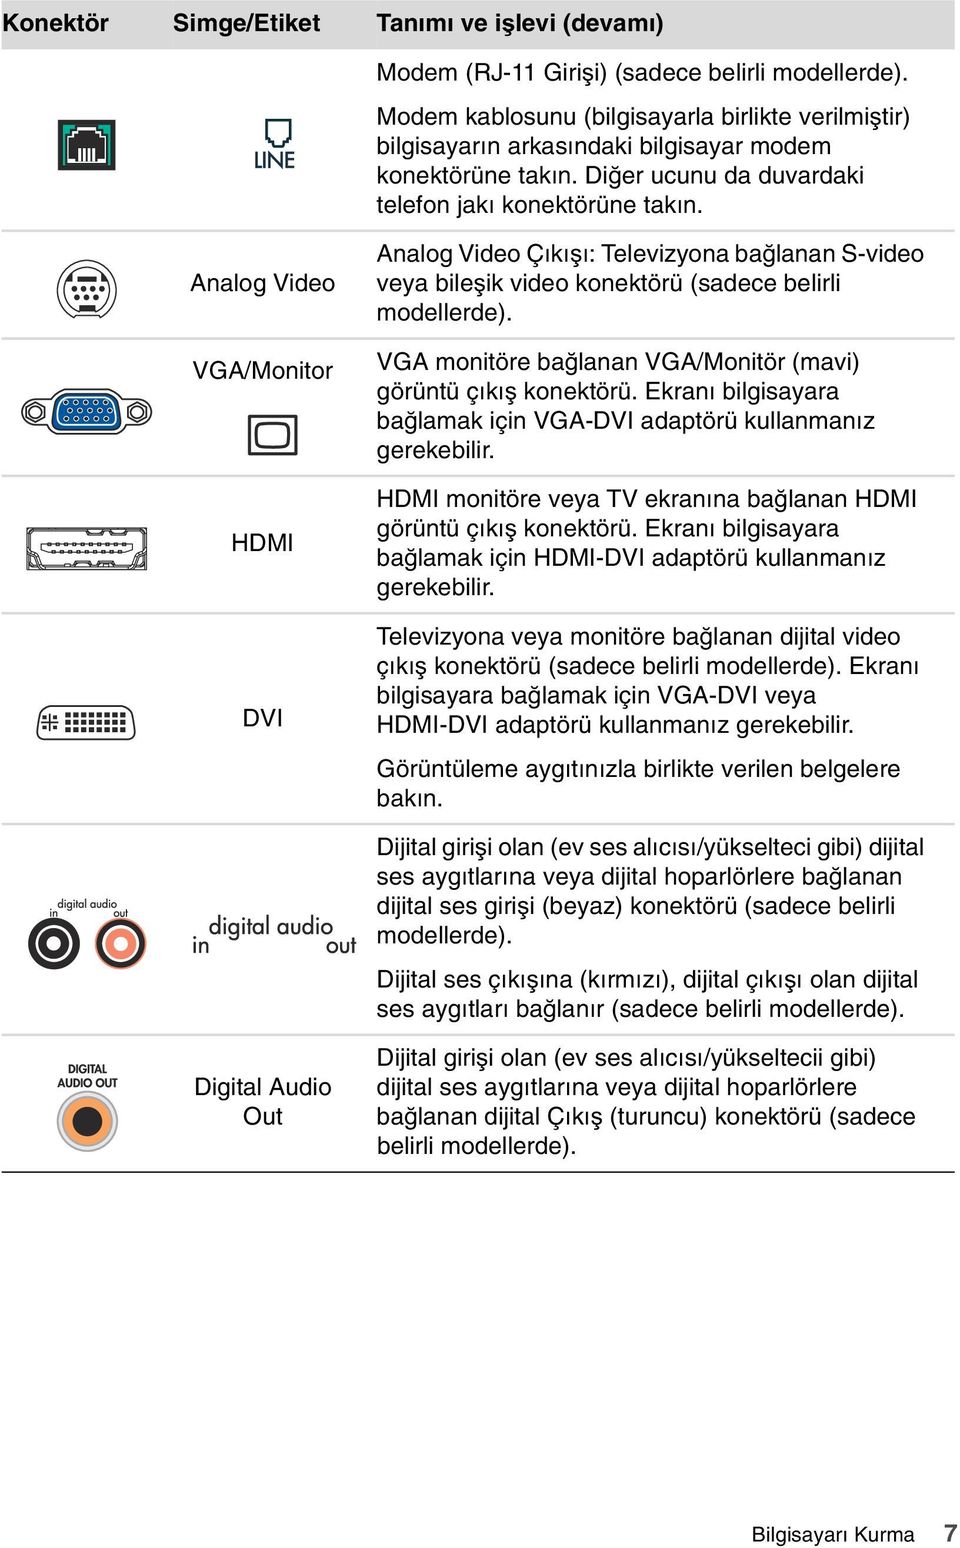 Analog Video VGA/Monitor HDMI DVI Analog Video Çıkışı: Televizyona bağlanan S-video veya bileşik video konektörü (sadece belirli modellerde).